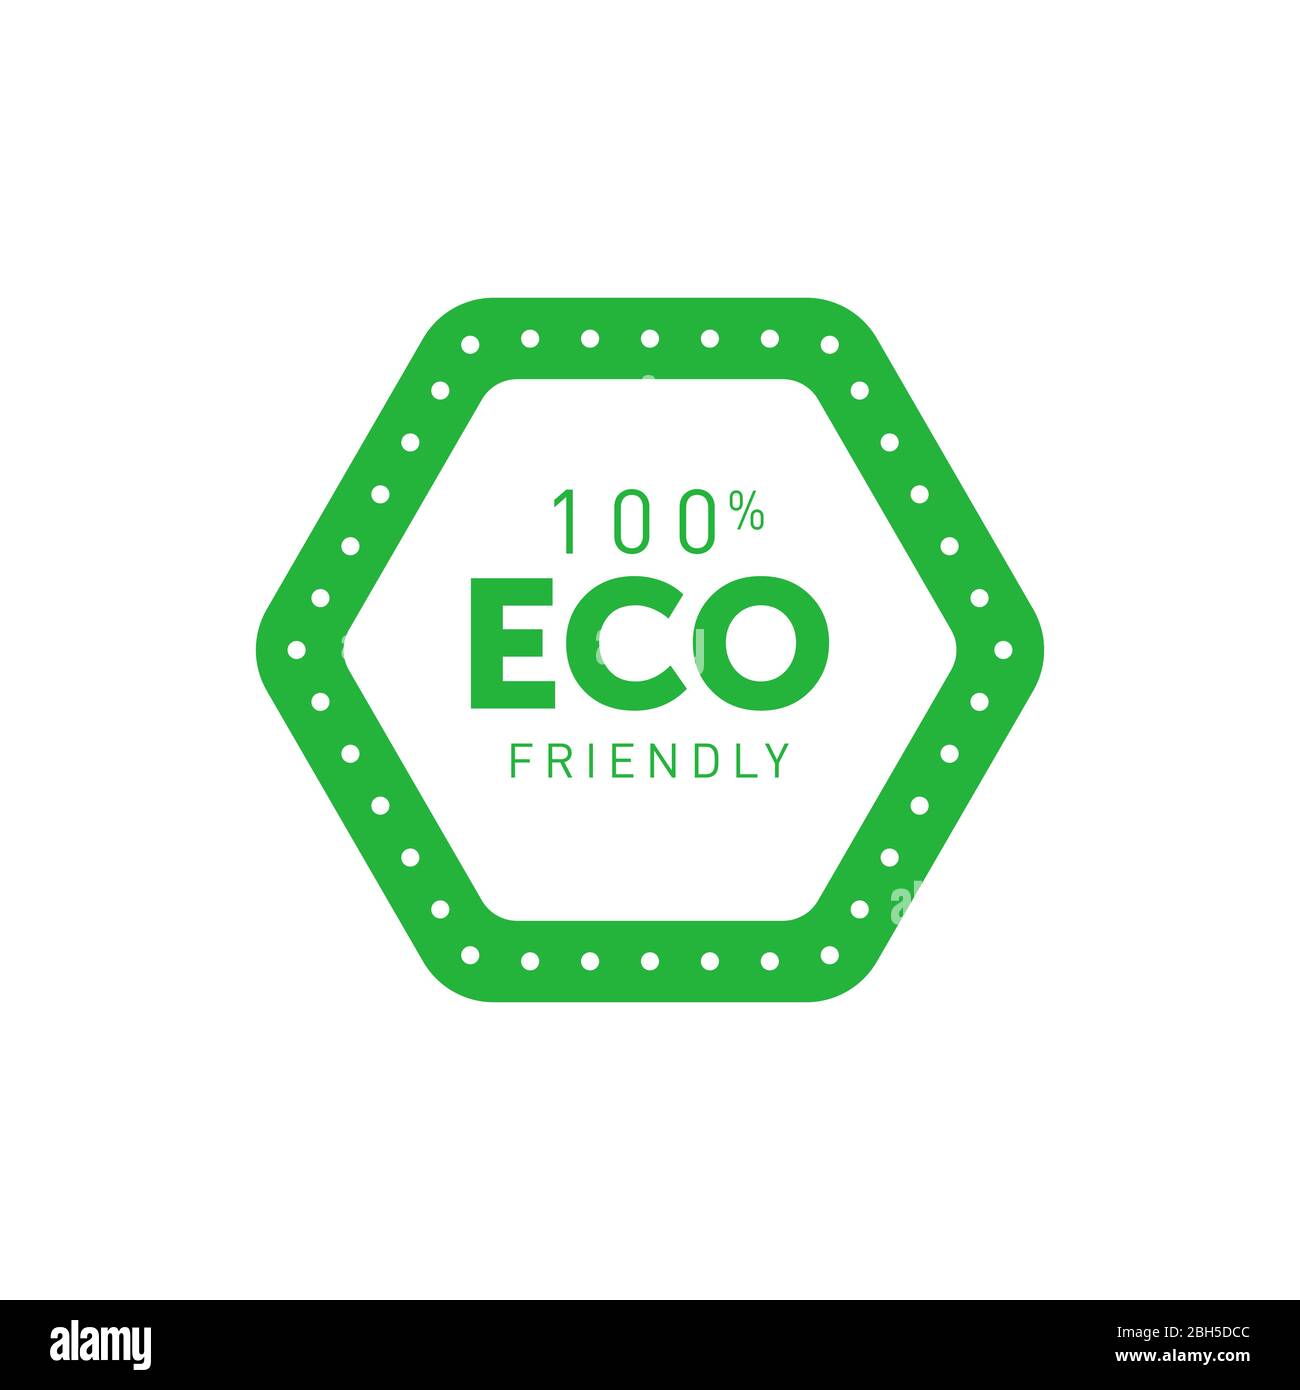 Umweltfreundliches 100% grünes sechseckiges Abzeichen. Design-Element für Verpackungsdesign und Werbematerial. Vektorgrafik. Stock Vektor